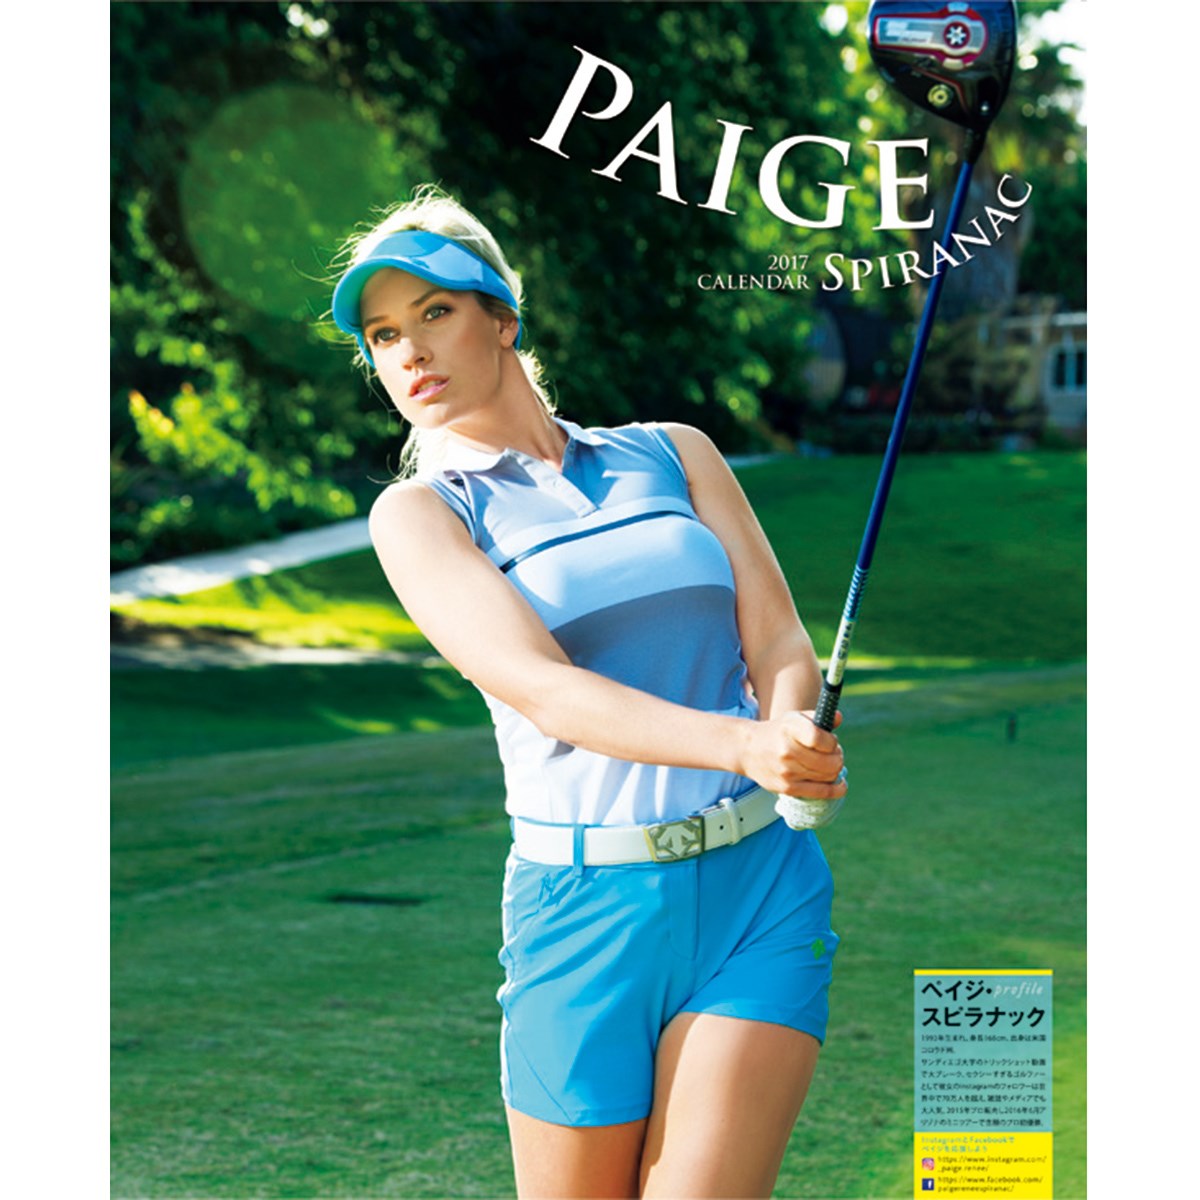 17ペイジ スピラナックカレンダー ゴルフダイジェスト Golf Digest 通販 Gdoアウトレット